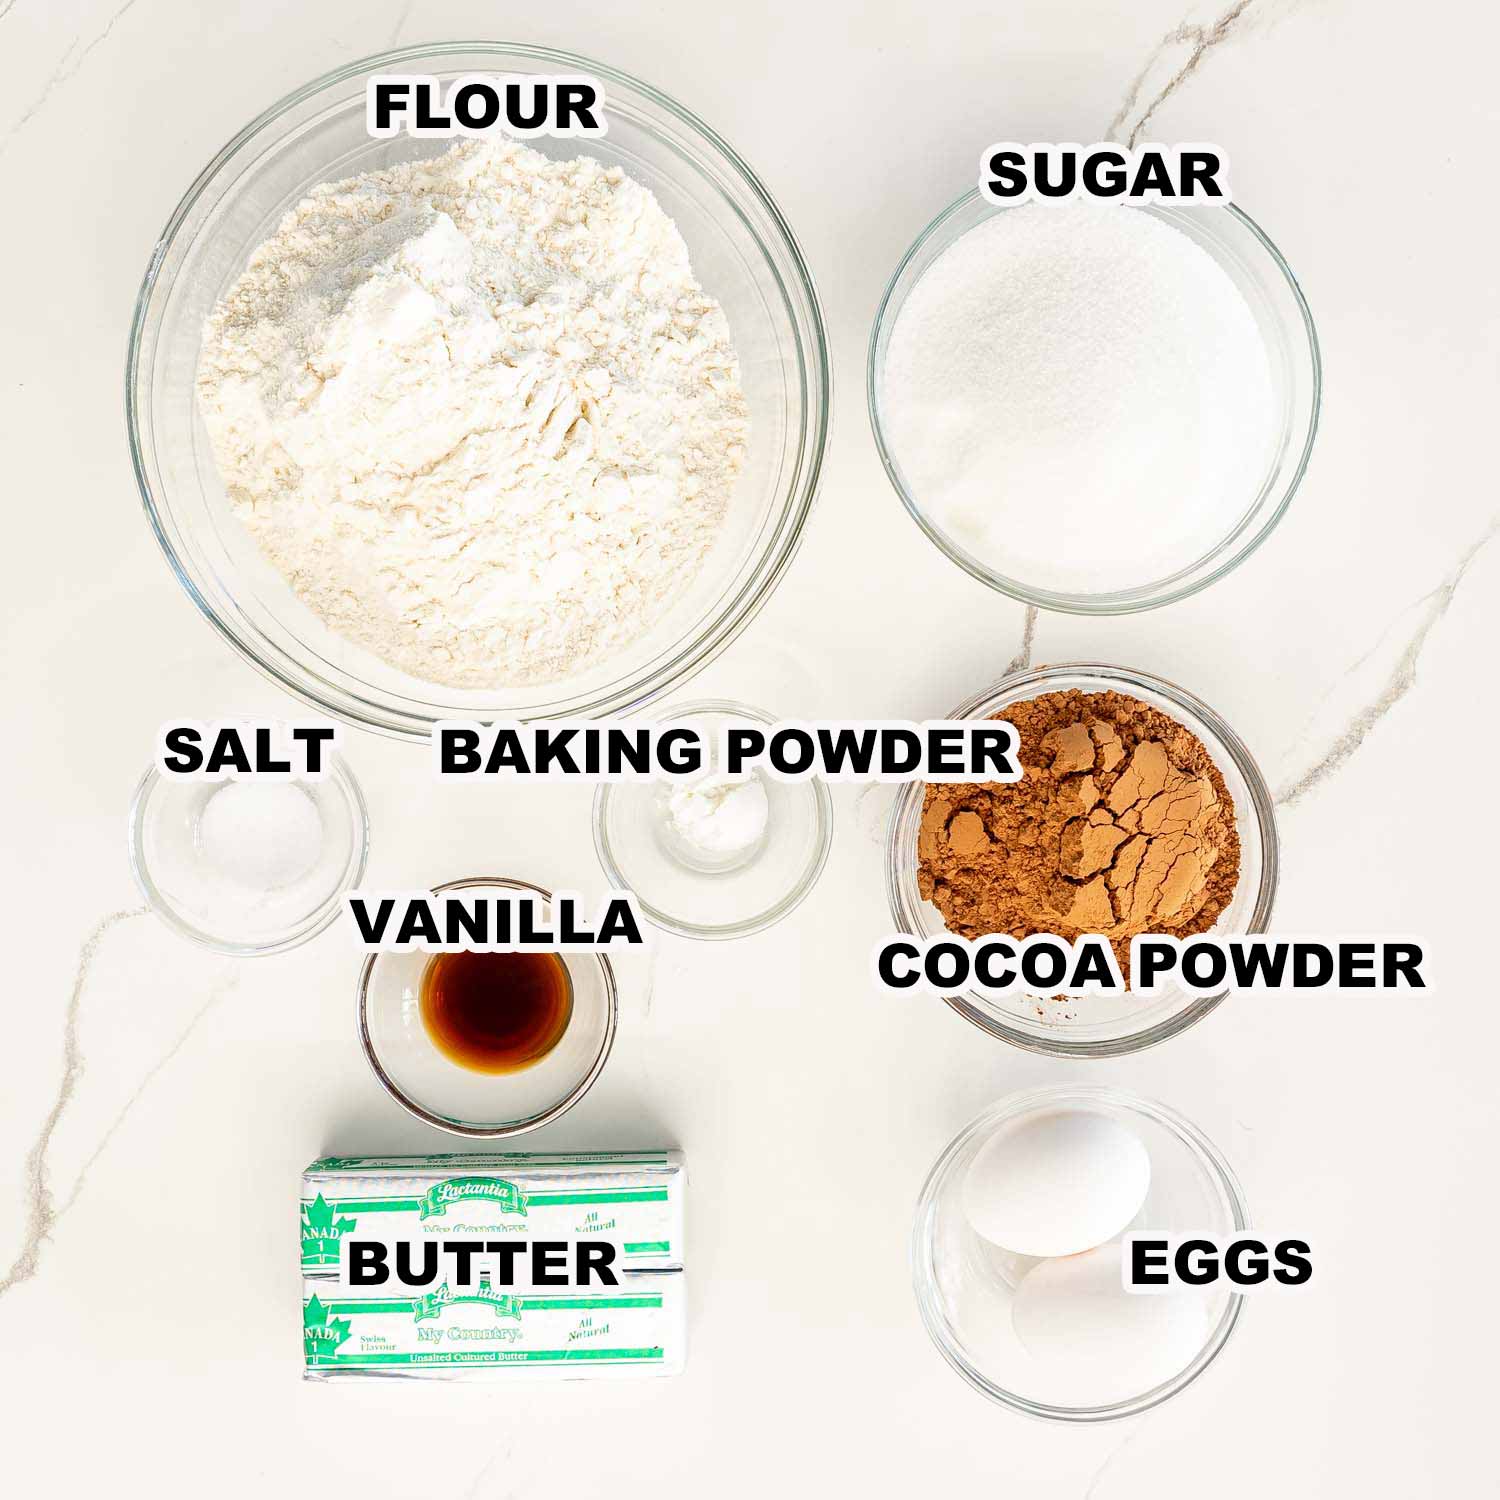 ingredients needed to make chocolate sugar cookies.